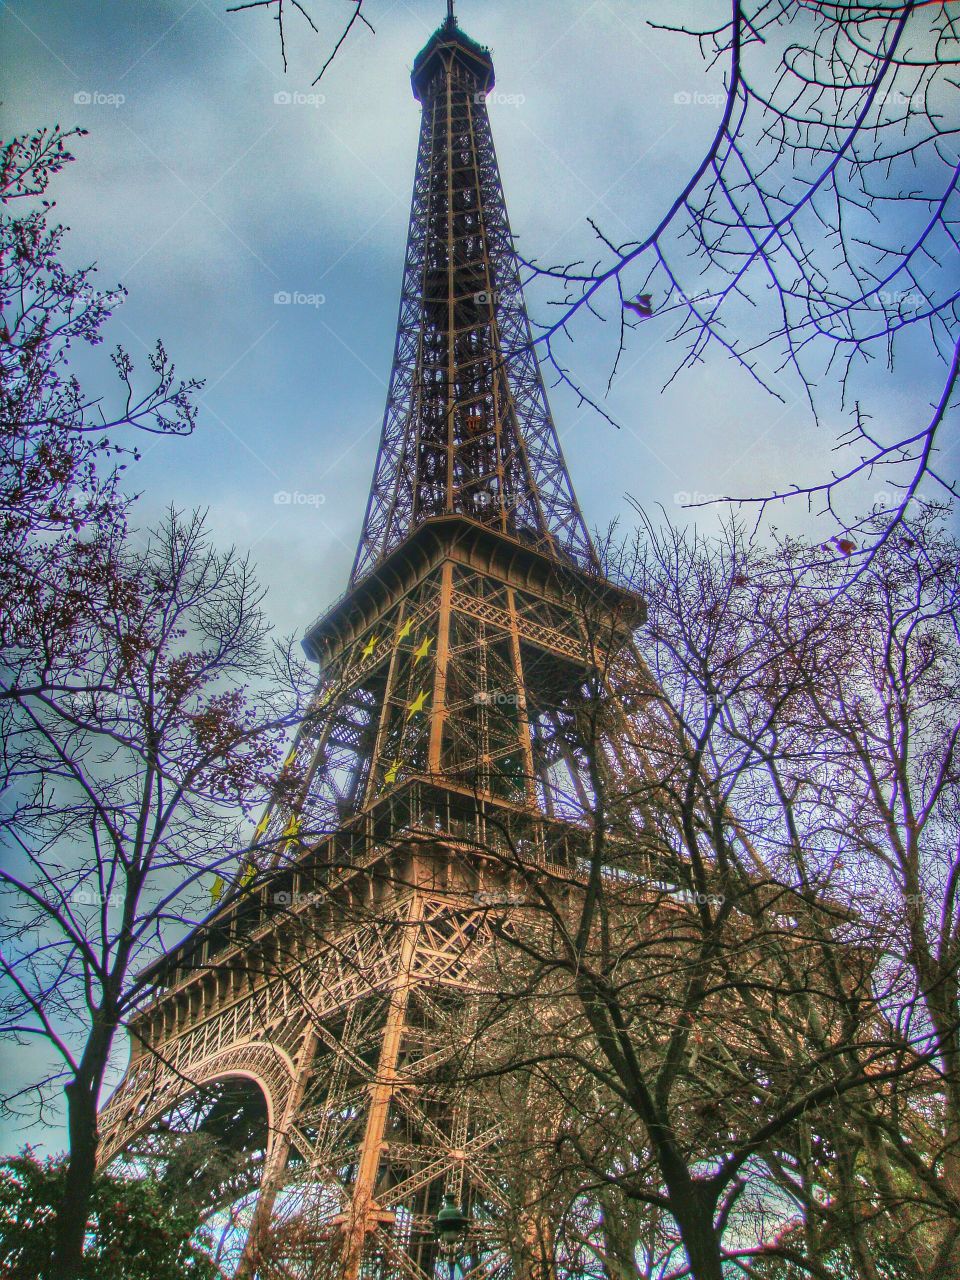 Eiffel Tower in winter